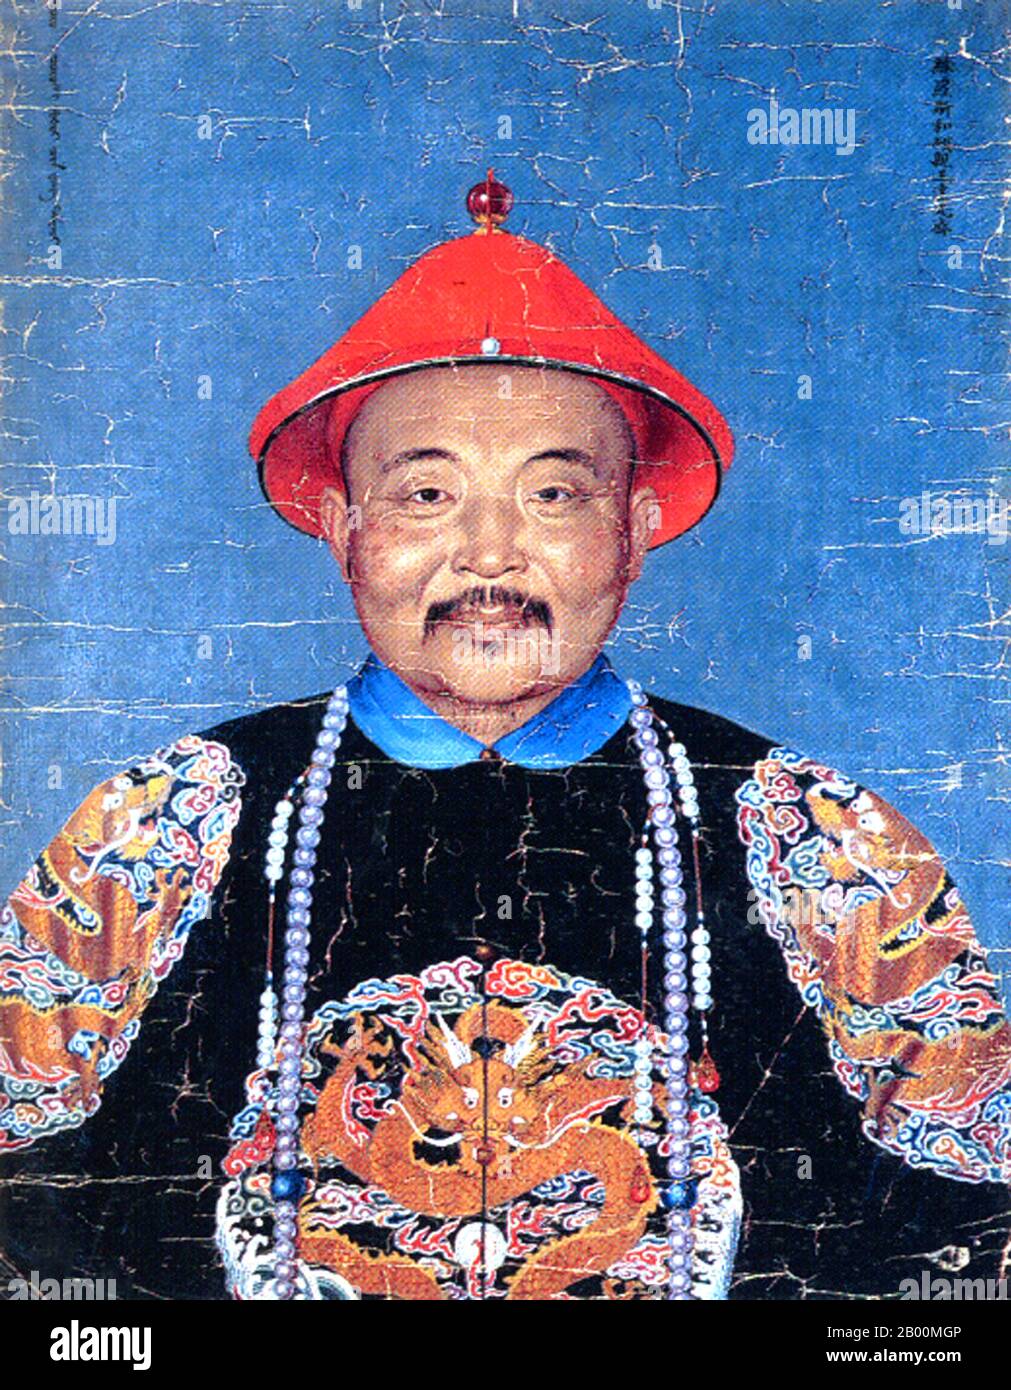 Cina: Dawaci Dorbed, un ufficiale militare di Qing del regno di Qianlong (1735-96). I ritratti della corte imperiale di Qing degli ufficiali militari di Manchu, conosciuti come Bannermen, metà del XVIII secolo. Da quando la Cina fu portata sotto il dominio della dinastia Qing (1644 – 1683), i soldati della bandiera divennero più professionali e burocratizzati. Una volta che i Manchus presero il governo, non potevano più soddisfare le necessità materiali dei soldati garnishing e distribuendo il bottino; invece, fu istituito un sistema di stipendio, si classificarono, e i Bannermen divennero una sorta di casta militare ereditaria. Foto Stock